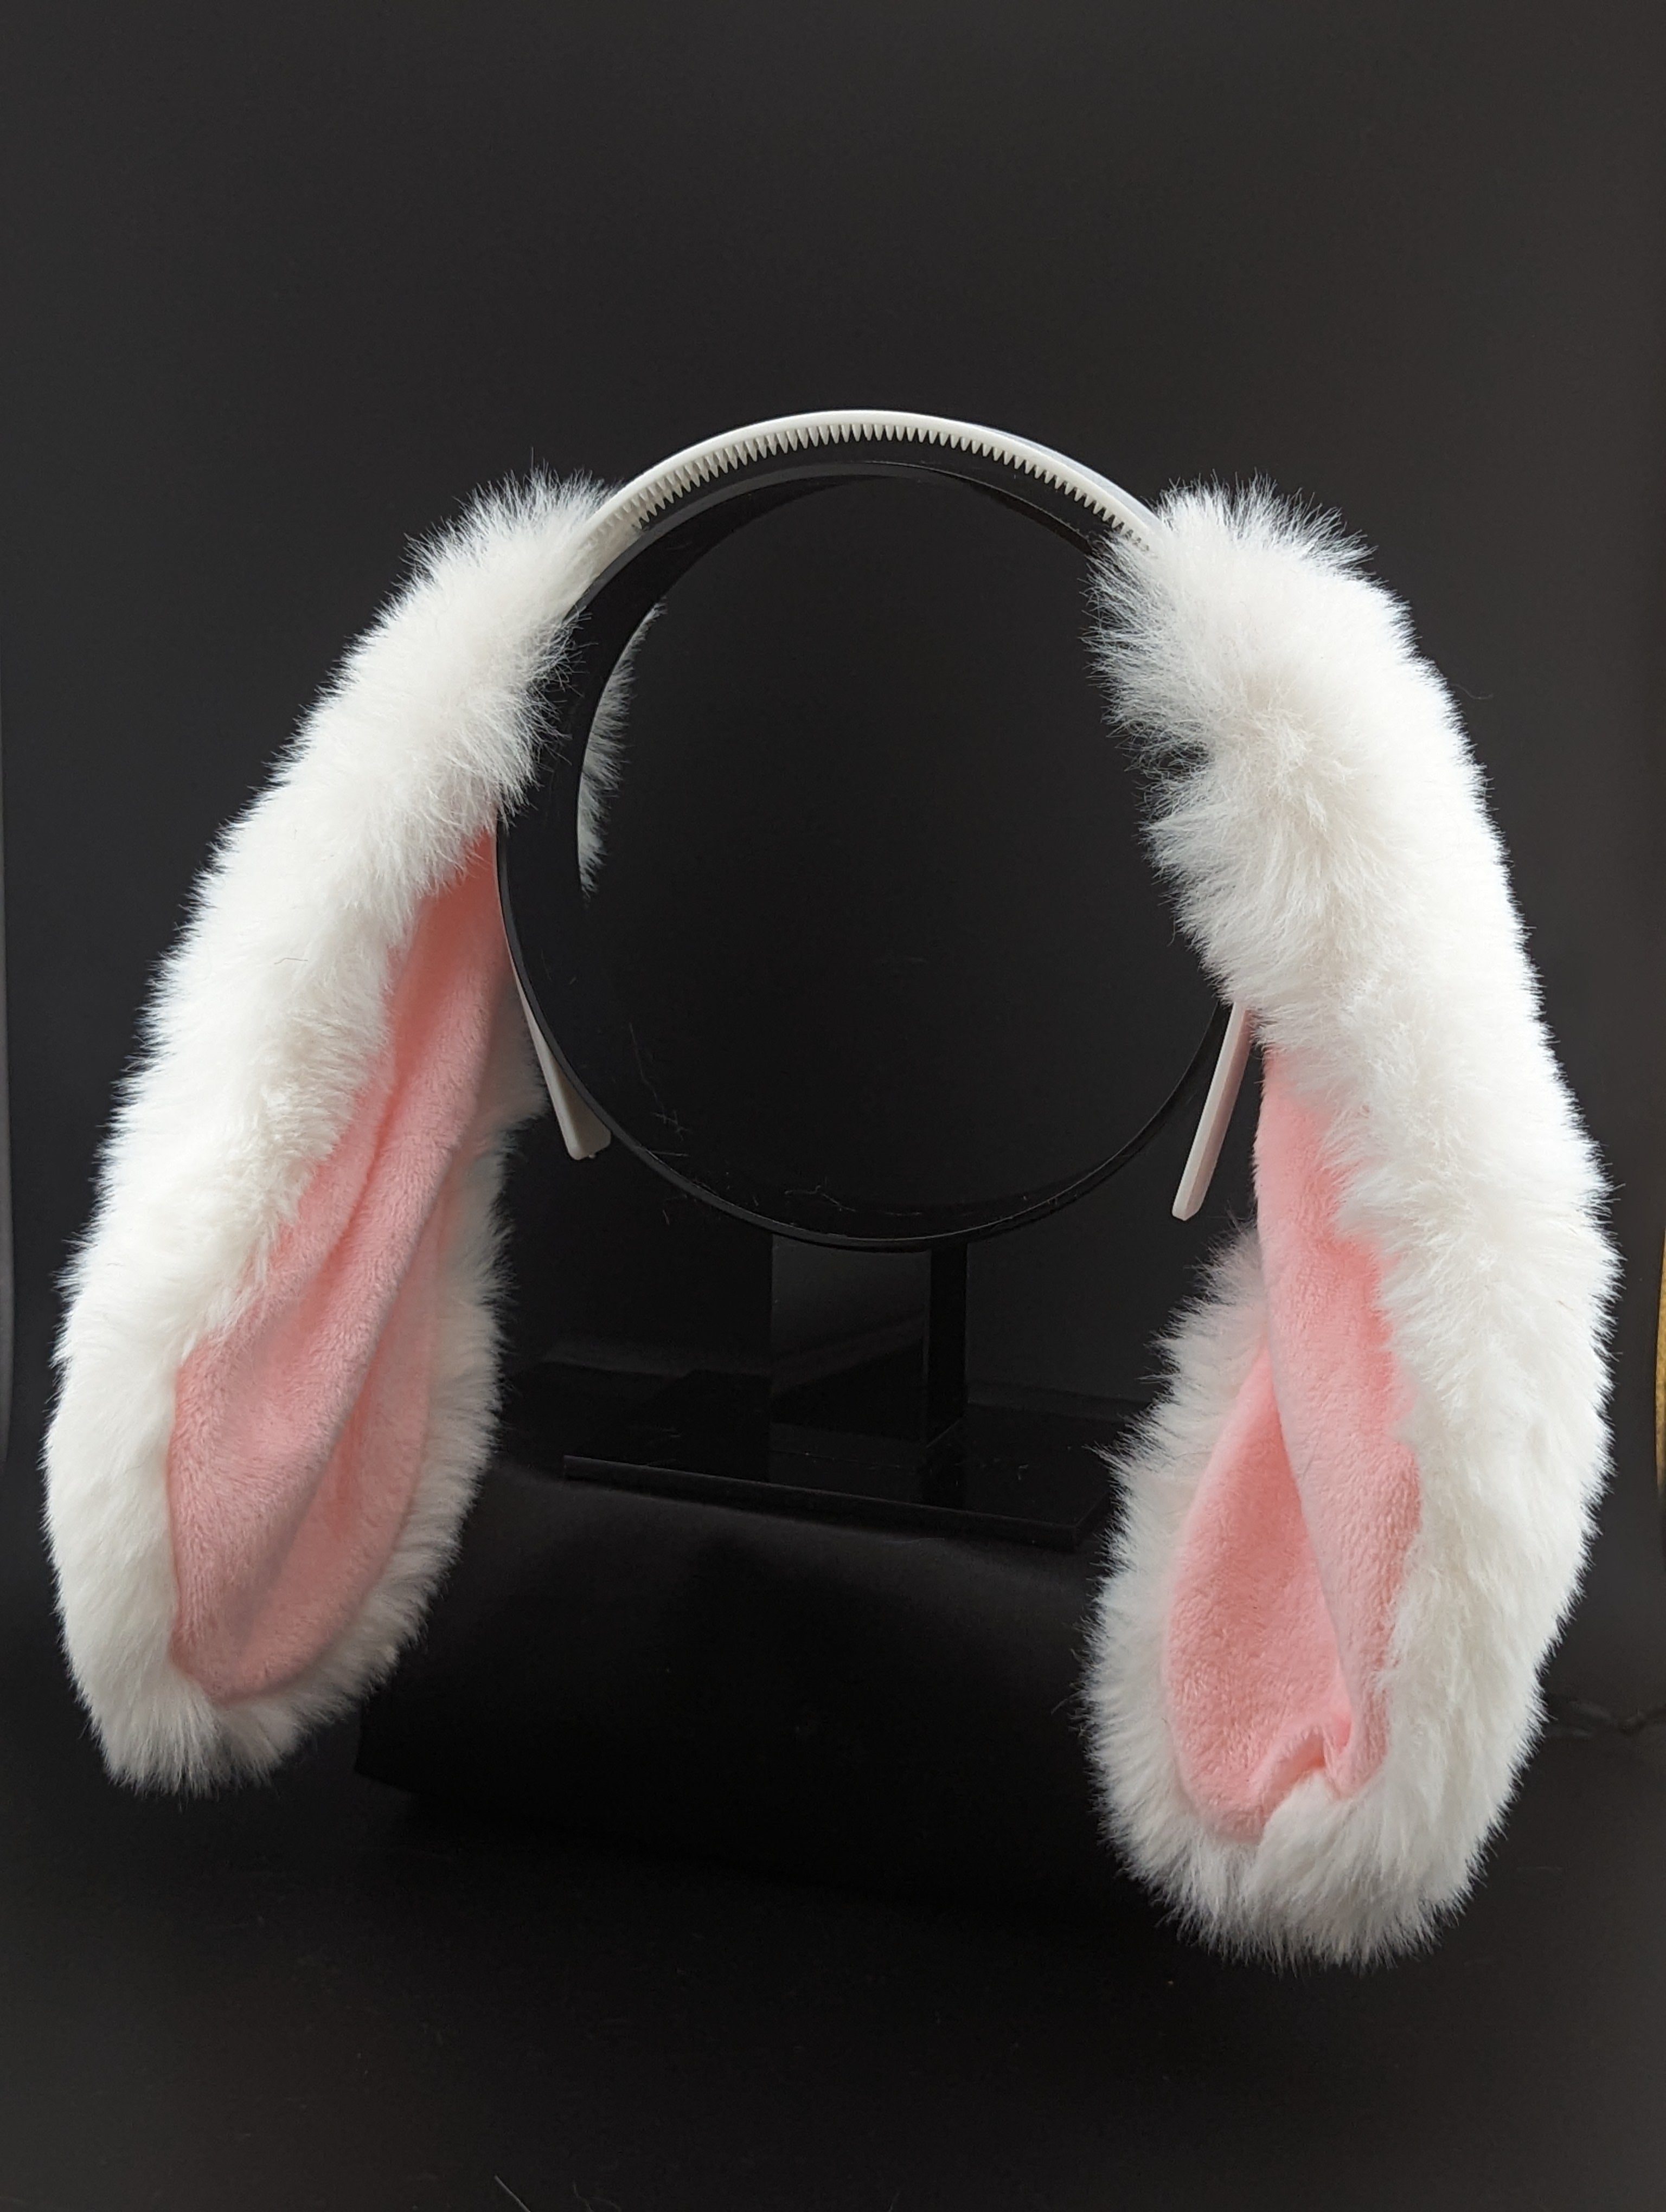 Bunny Rabbit Ears – Tails Of Fantasy